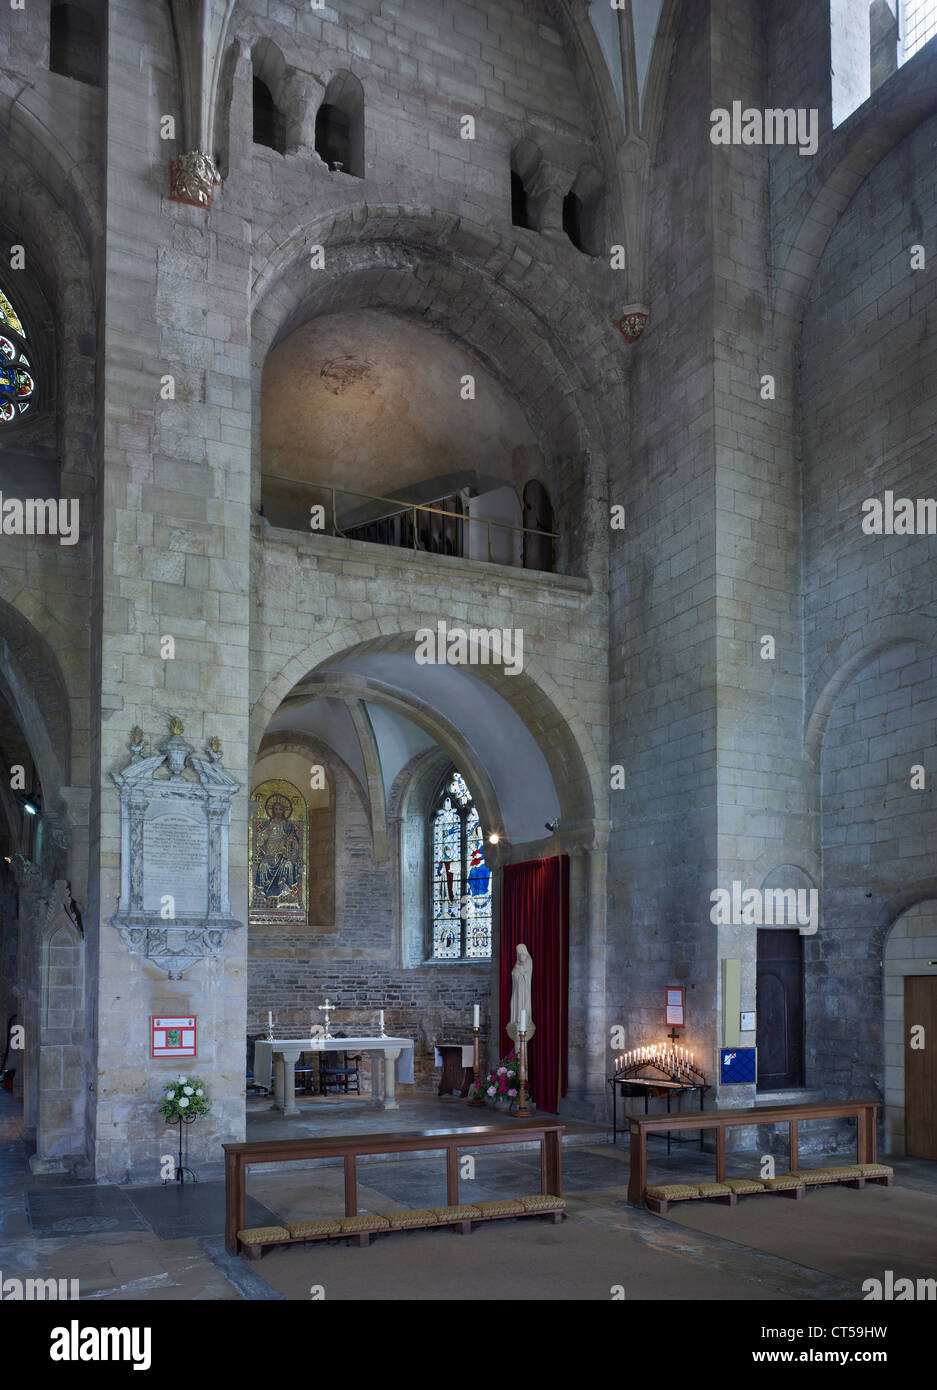 La Abadía de Tewkesbury crucero sur con arcos normandos Foto de stock